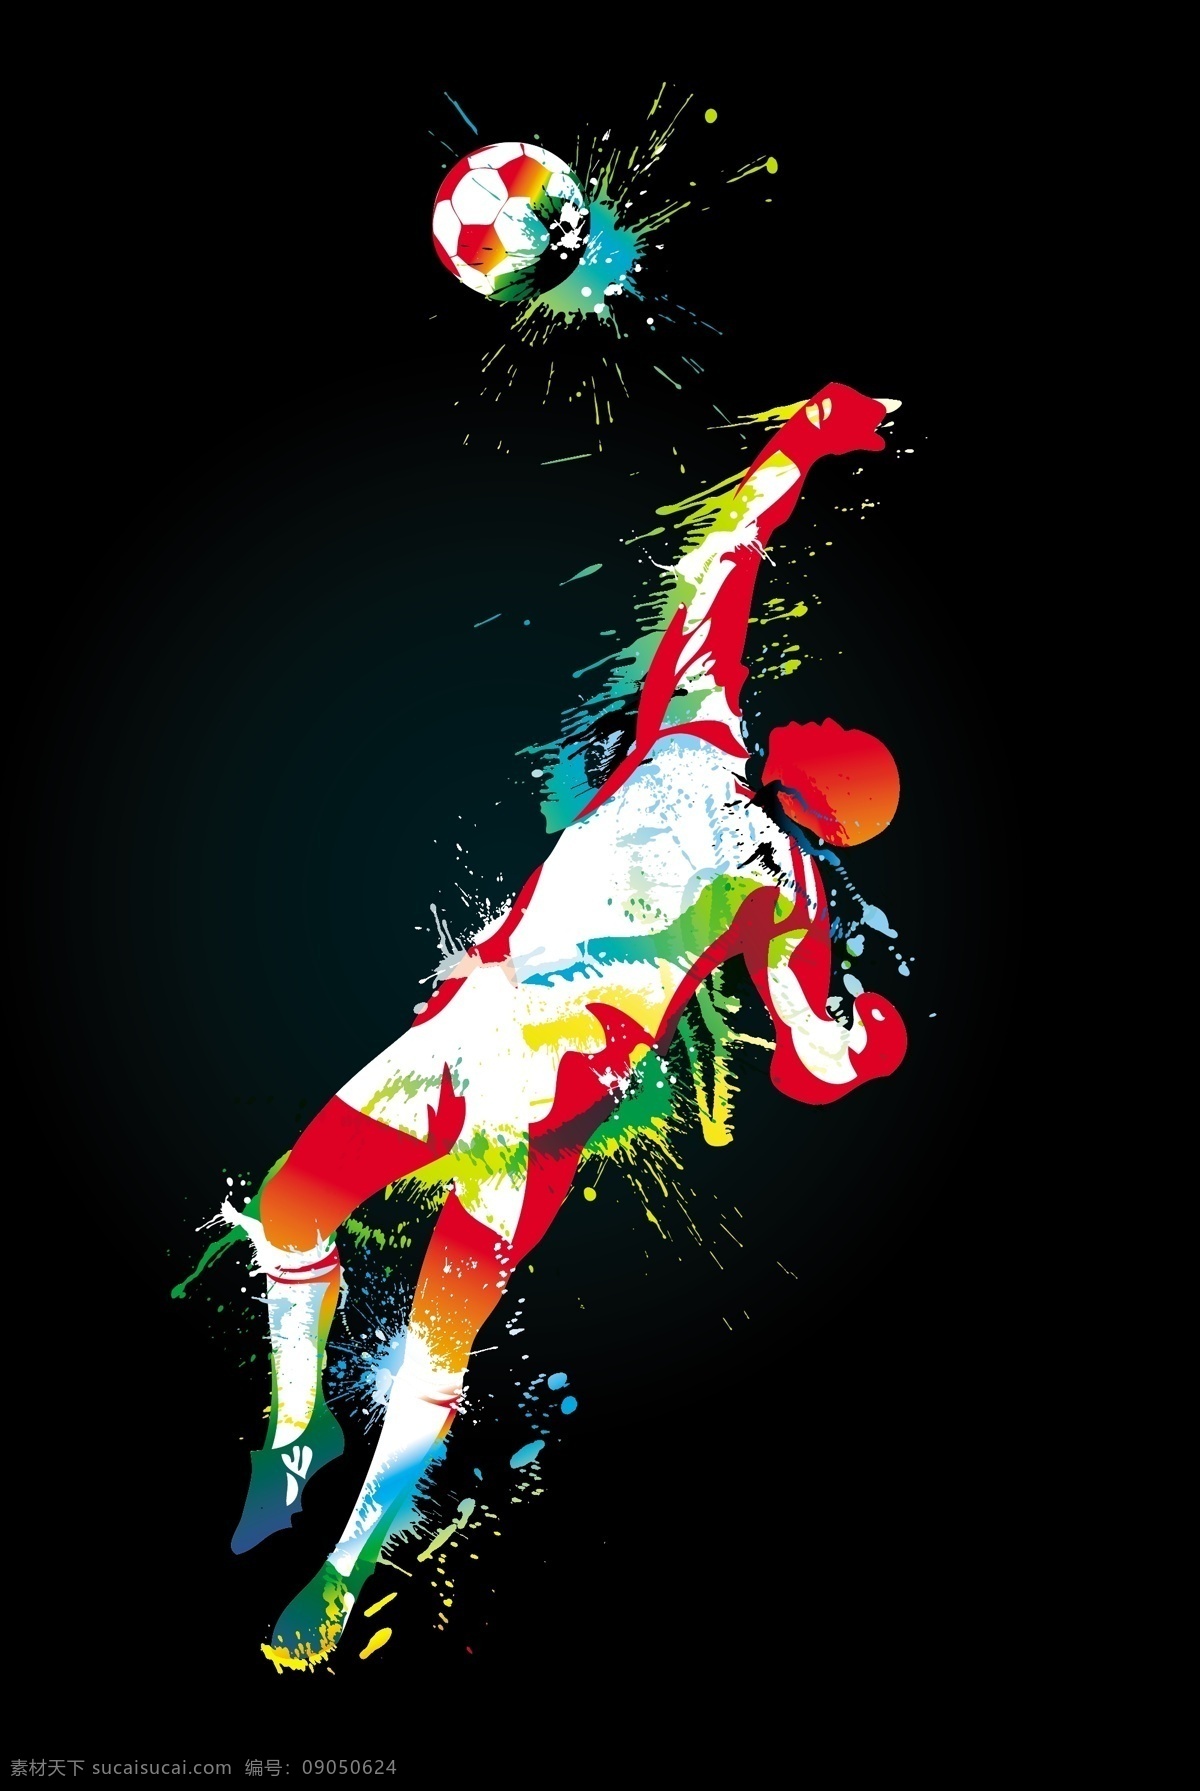 足球 云朵 矢量 运动员 平面设计 水彩 人物剪影 彩色 活动 节日 运动 体育